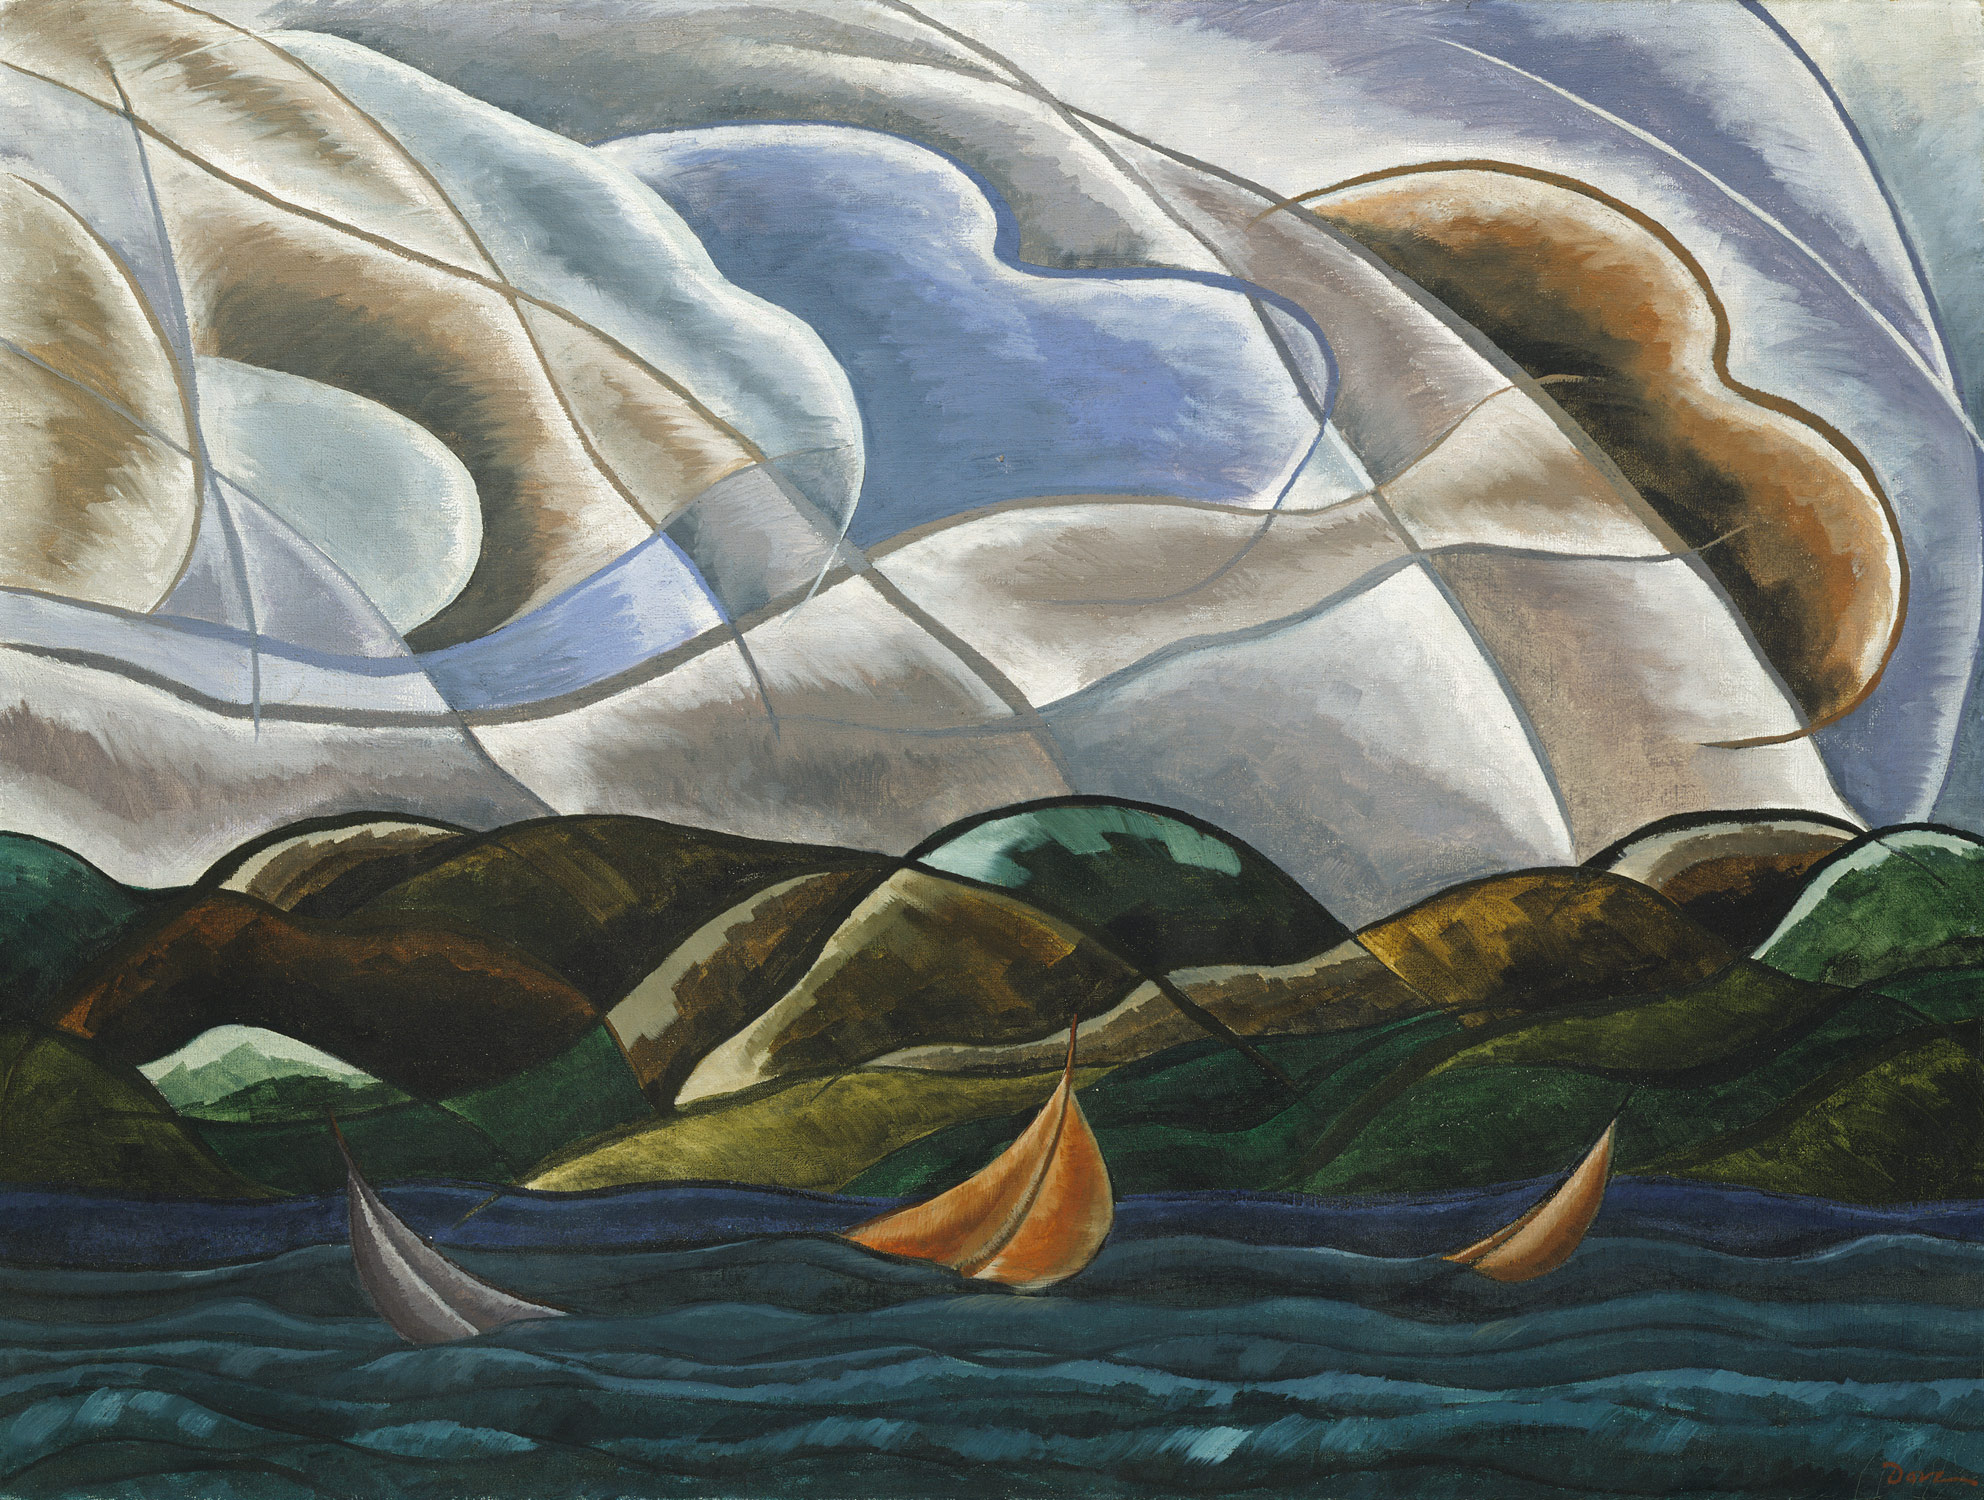 雲與海 by Arthur Dove - 1930年 - 75.2 x 100.6 公分 